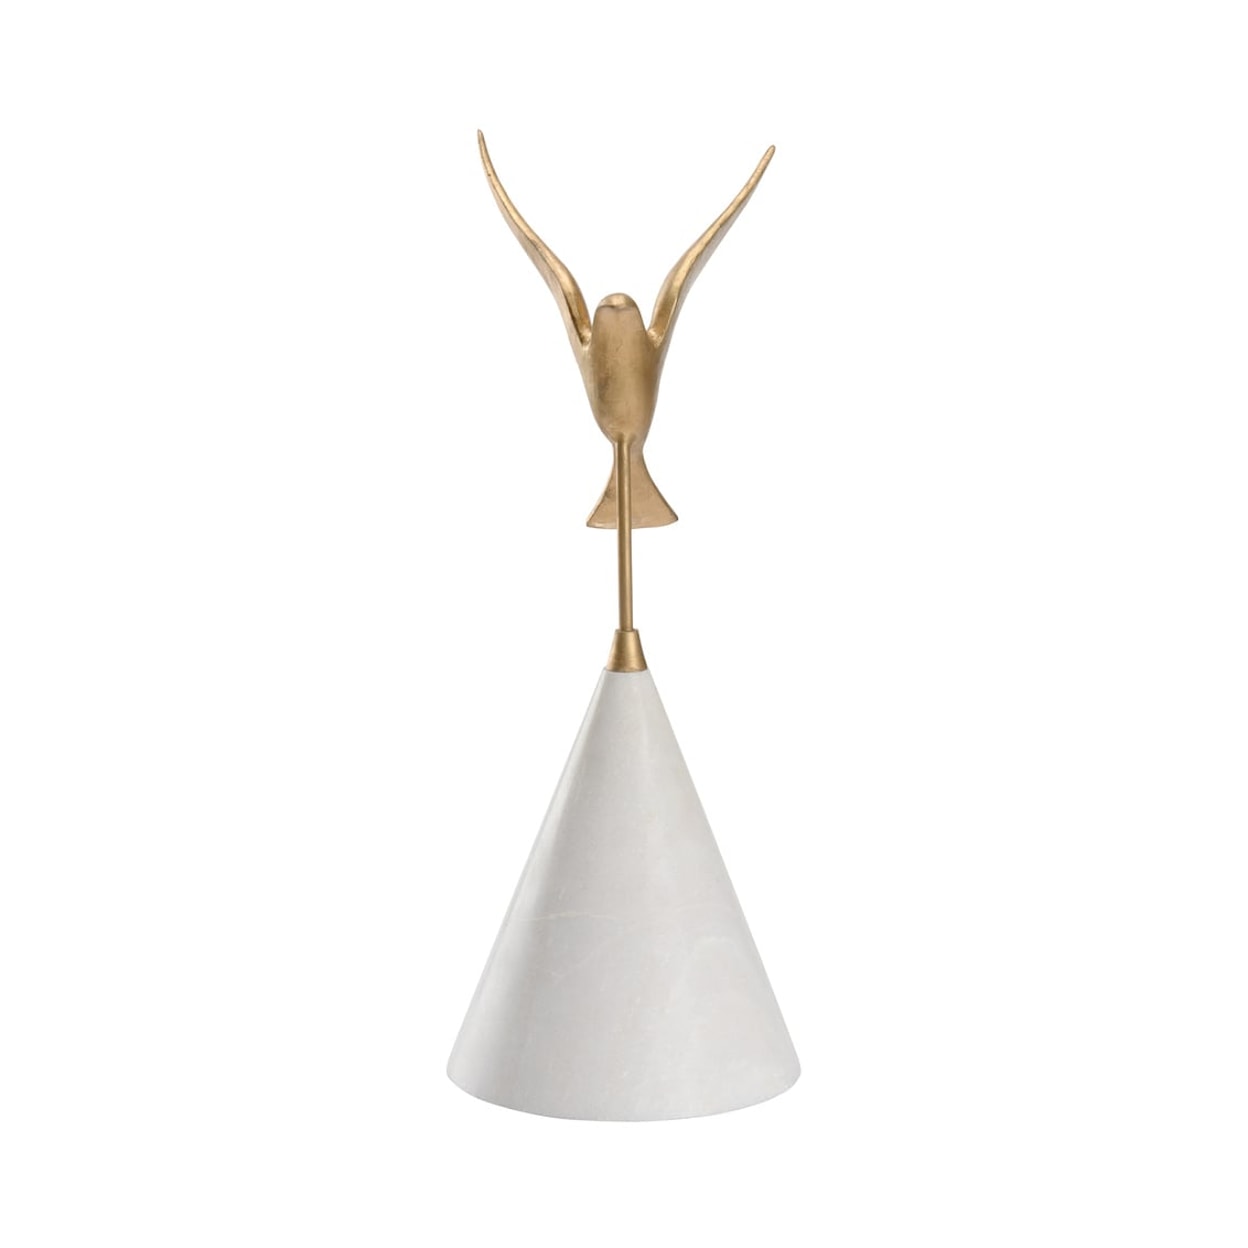 Wildwood Lamps Decorative Accessories Flights Of Fancy Sculpture (Lg)